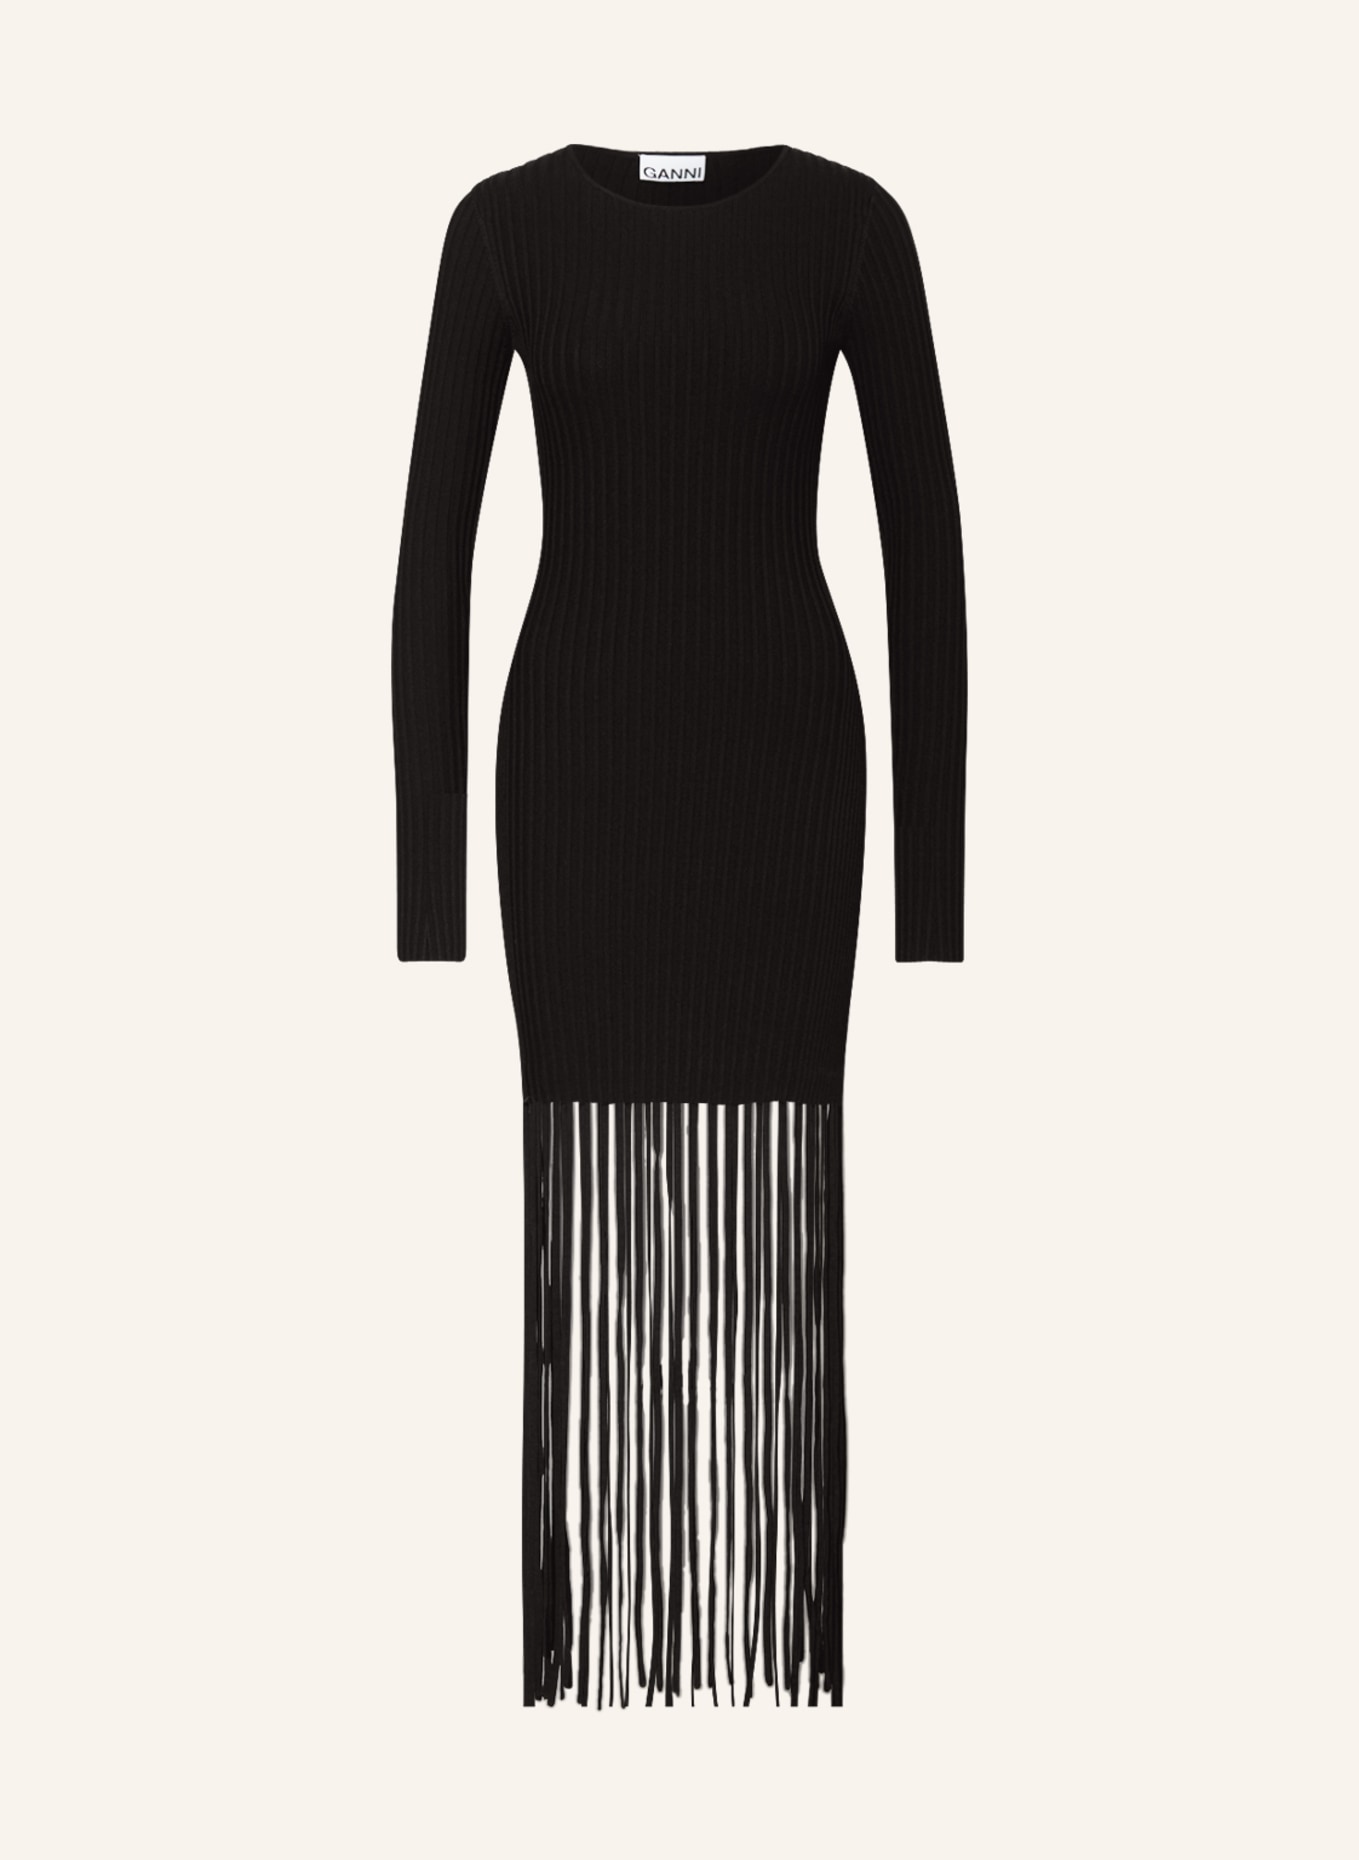 GANNI Knit dress with fringes, Color: BLACK (Image 1)